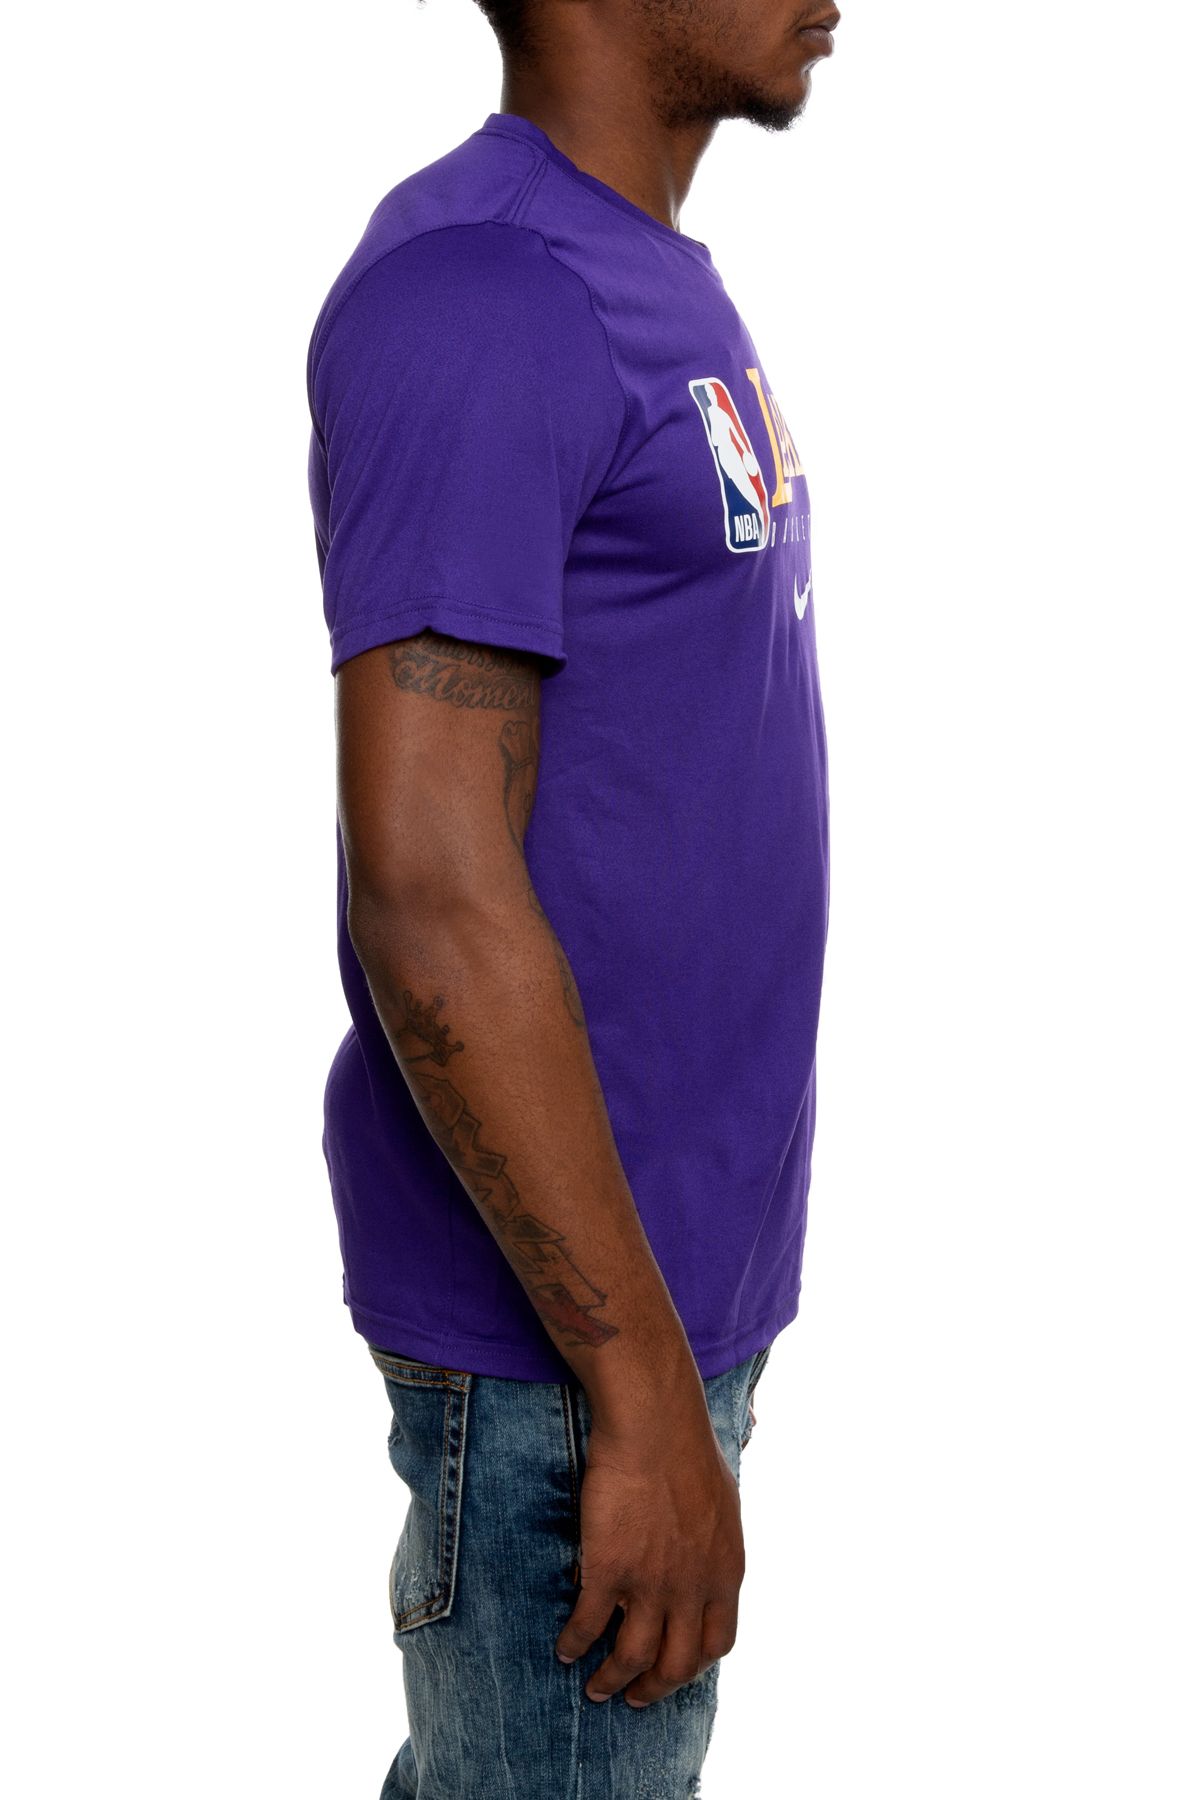 Nike Los Angeles Lakers Dri-FIT NBA TEE Purple - COURT PURPLE